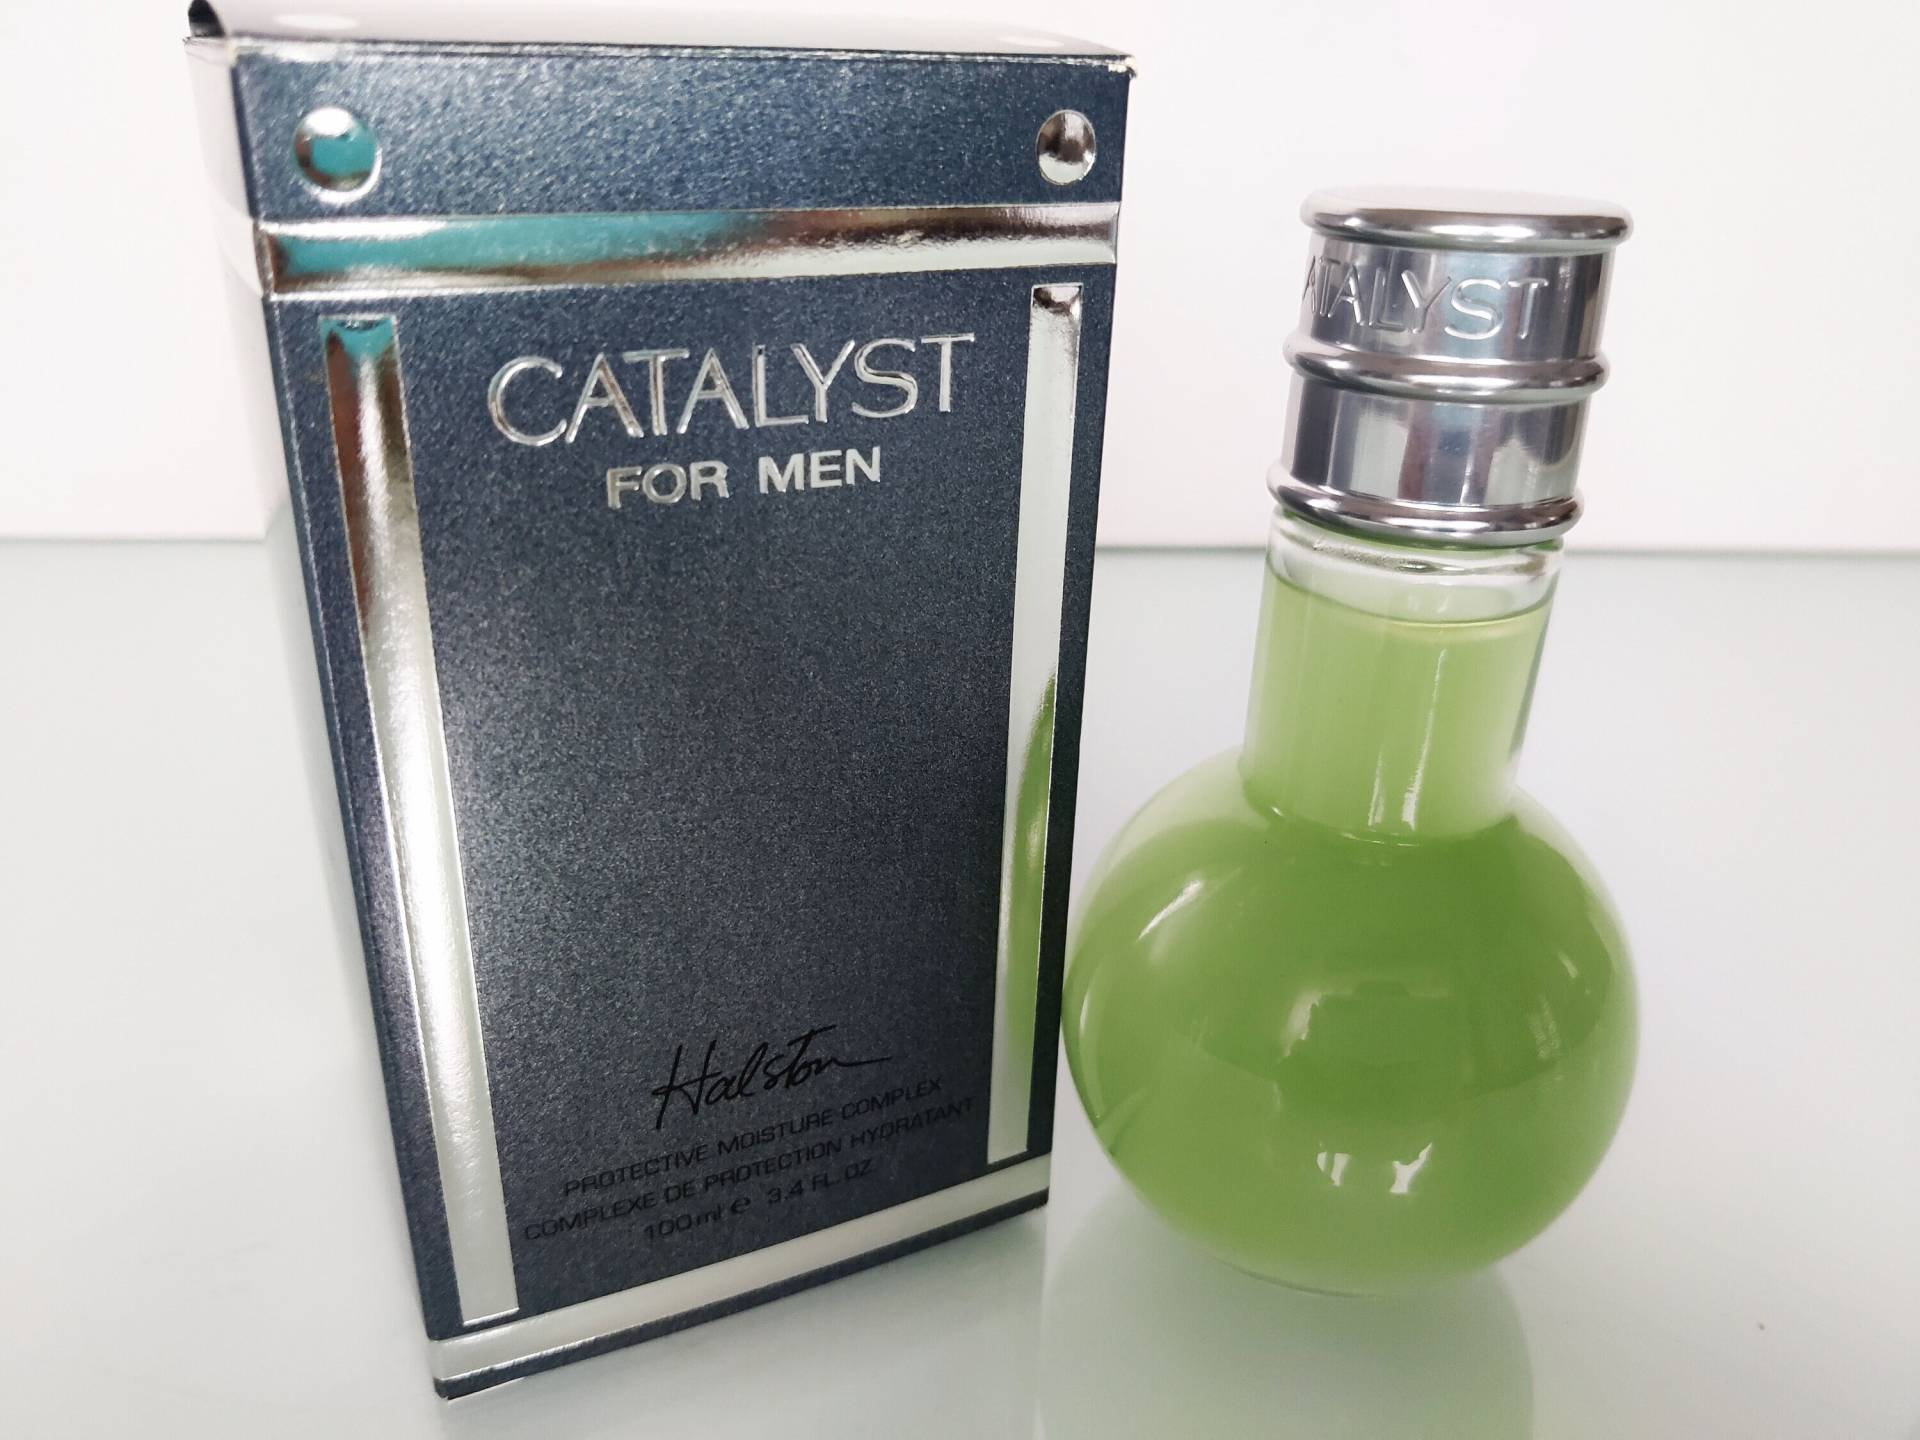 Halston "Catalyst" For Men Protective Moisture Vintage Catalyst 100 Ml/3, 4 Oz.fl. Brandneu von Etsy - MyVintageGadgets